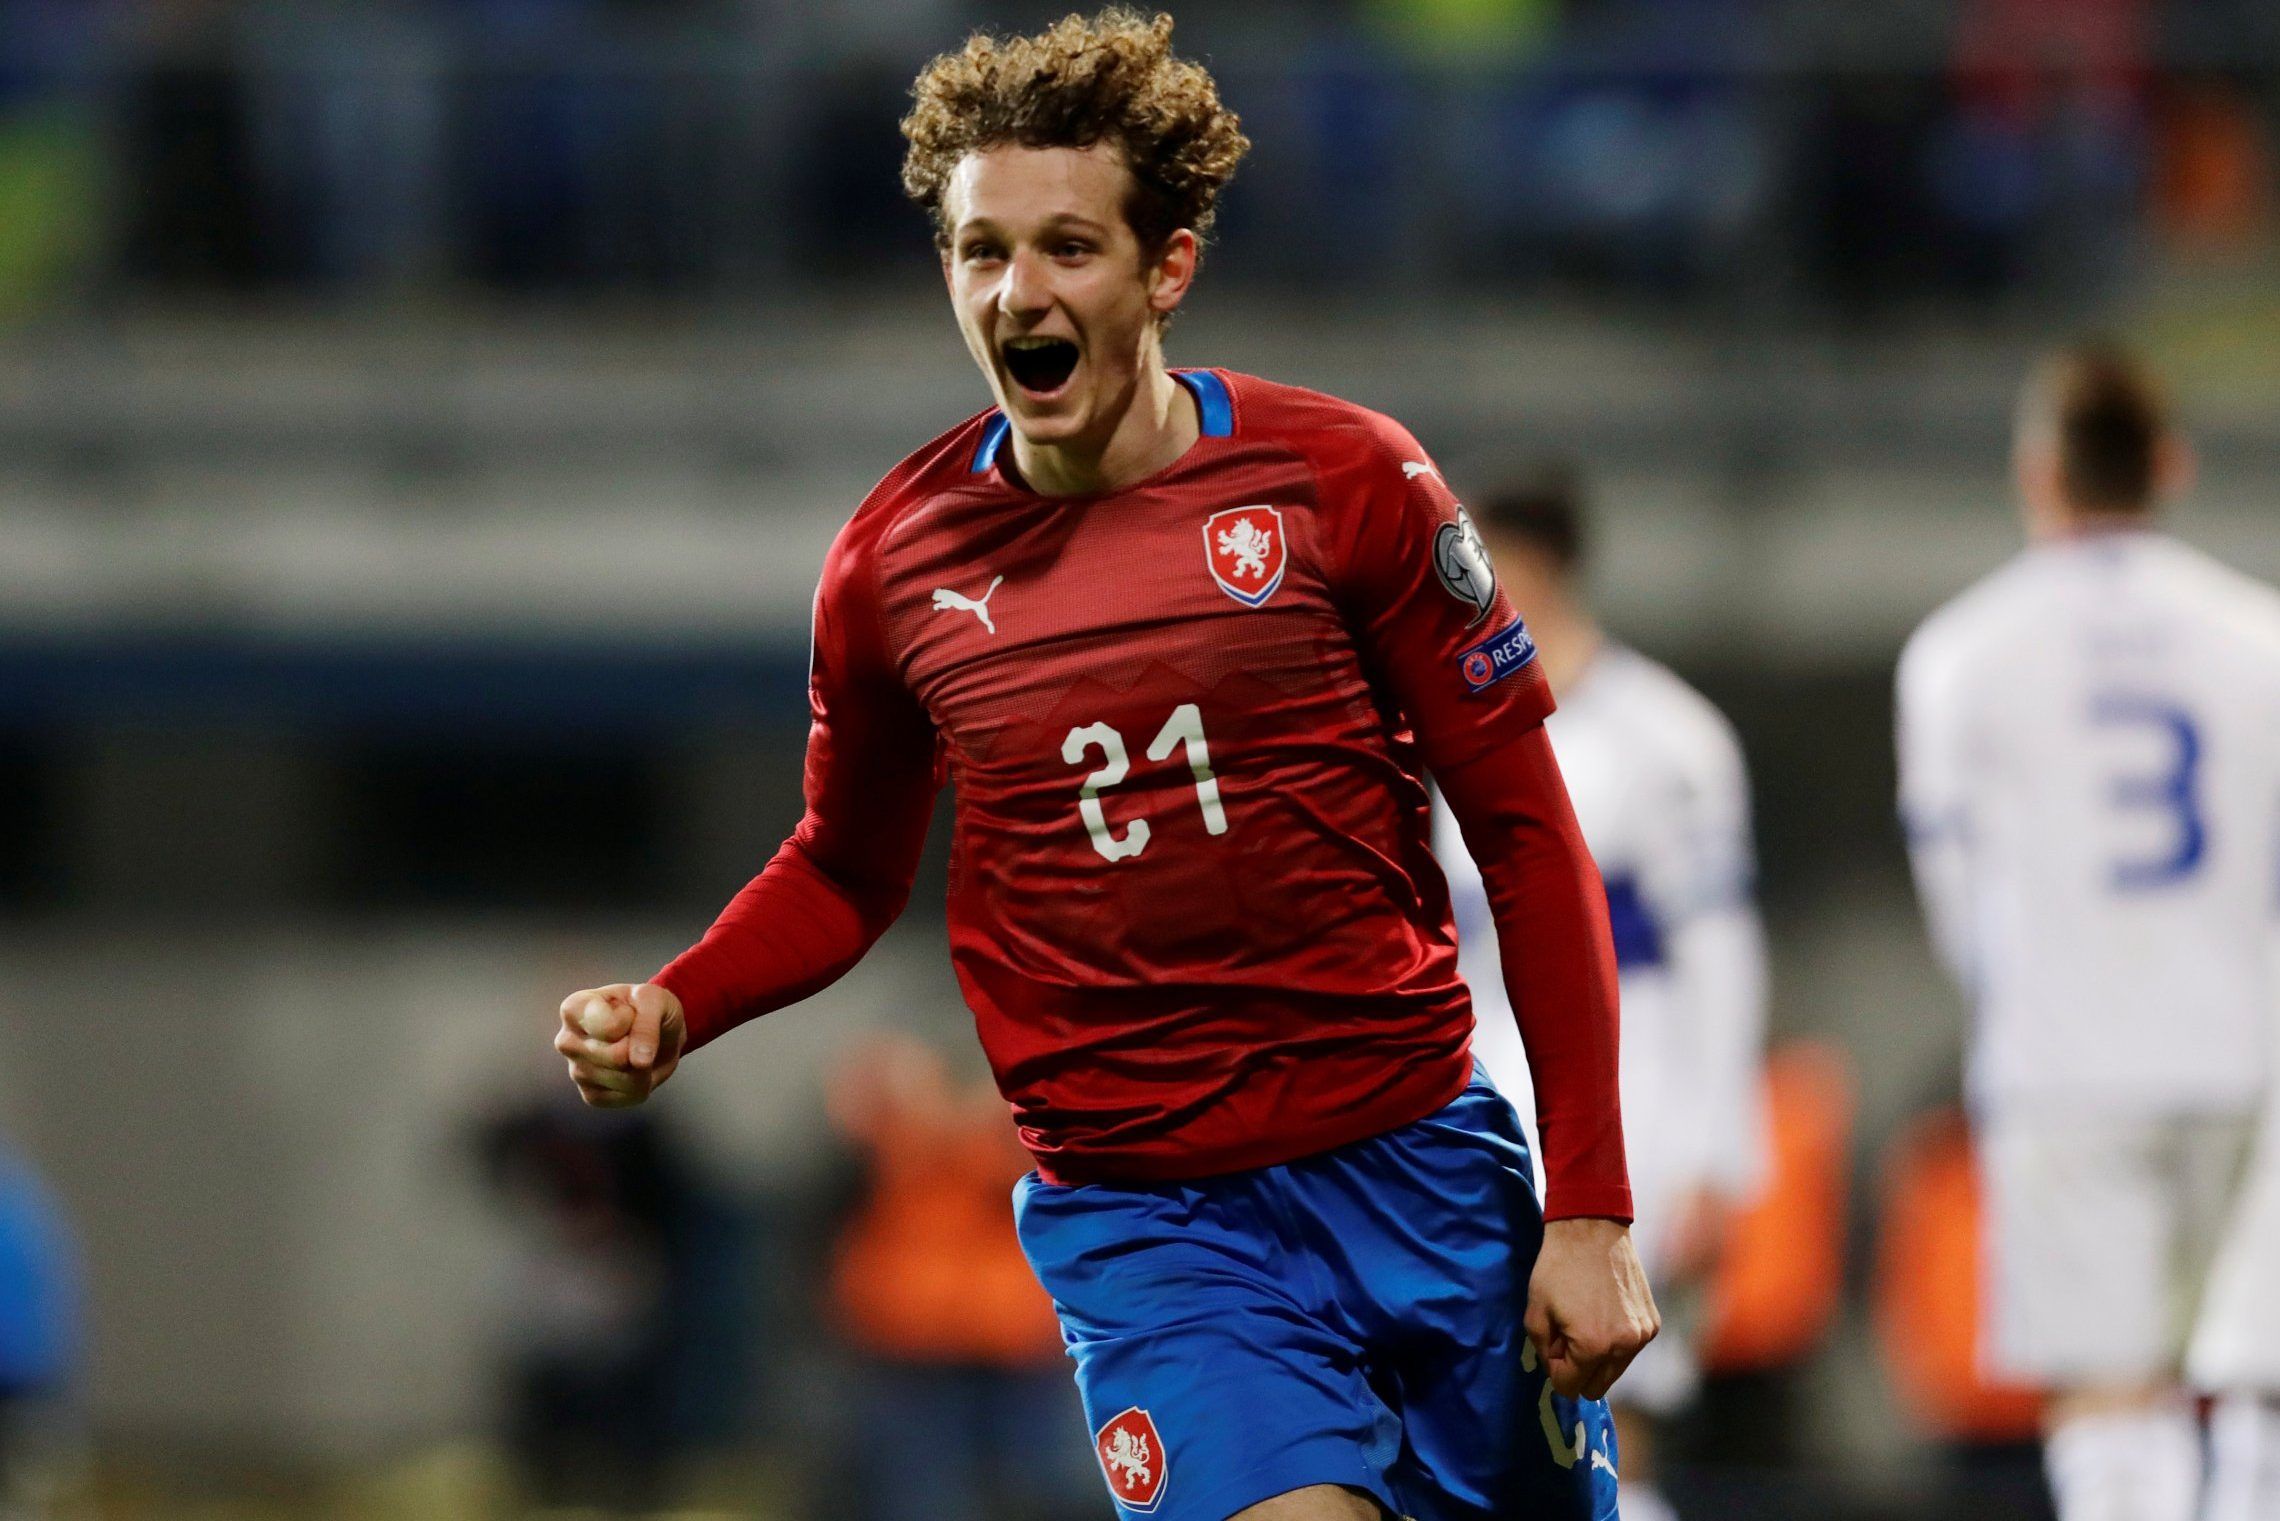 czech republic midfielder alex kral celebrates against kosovo in euro 2020 qualifer